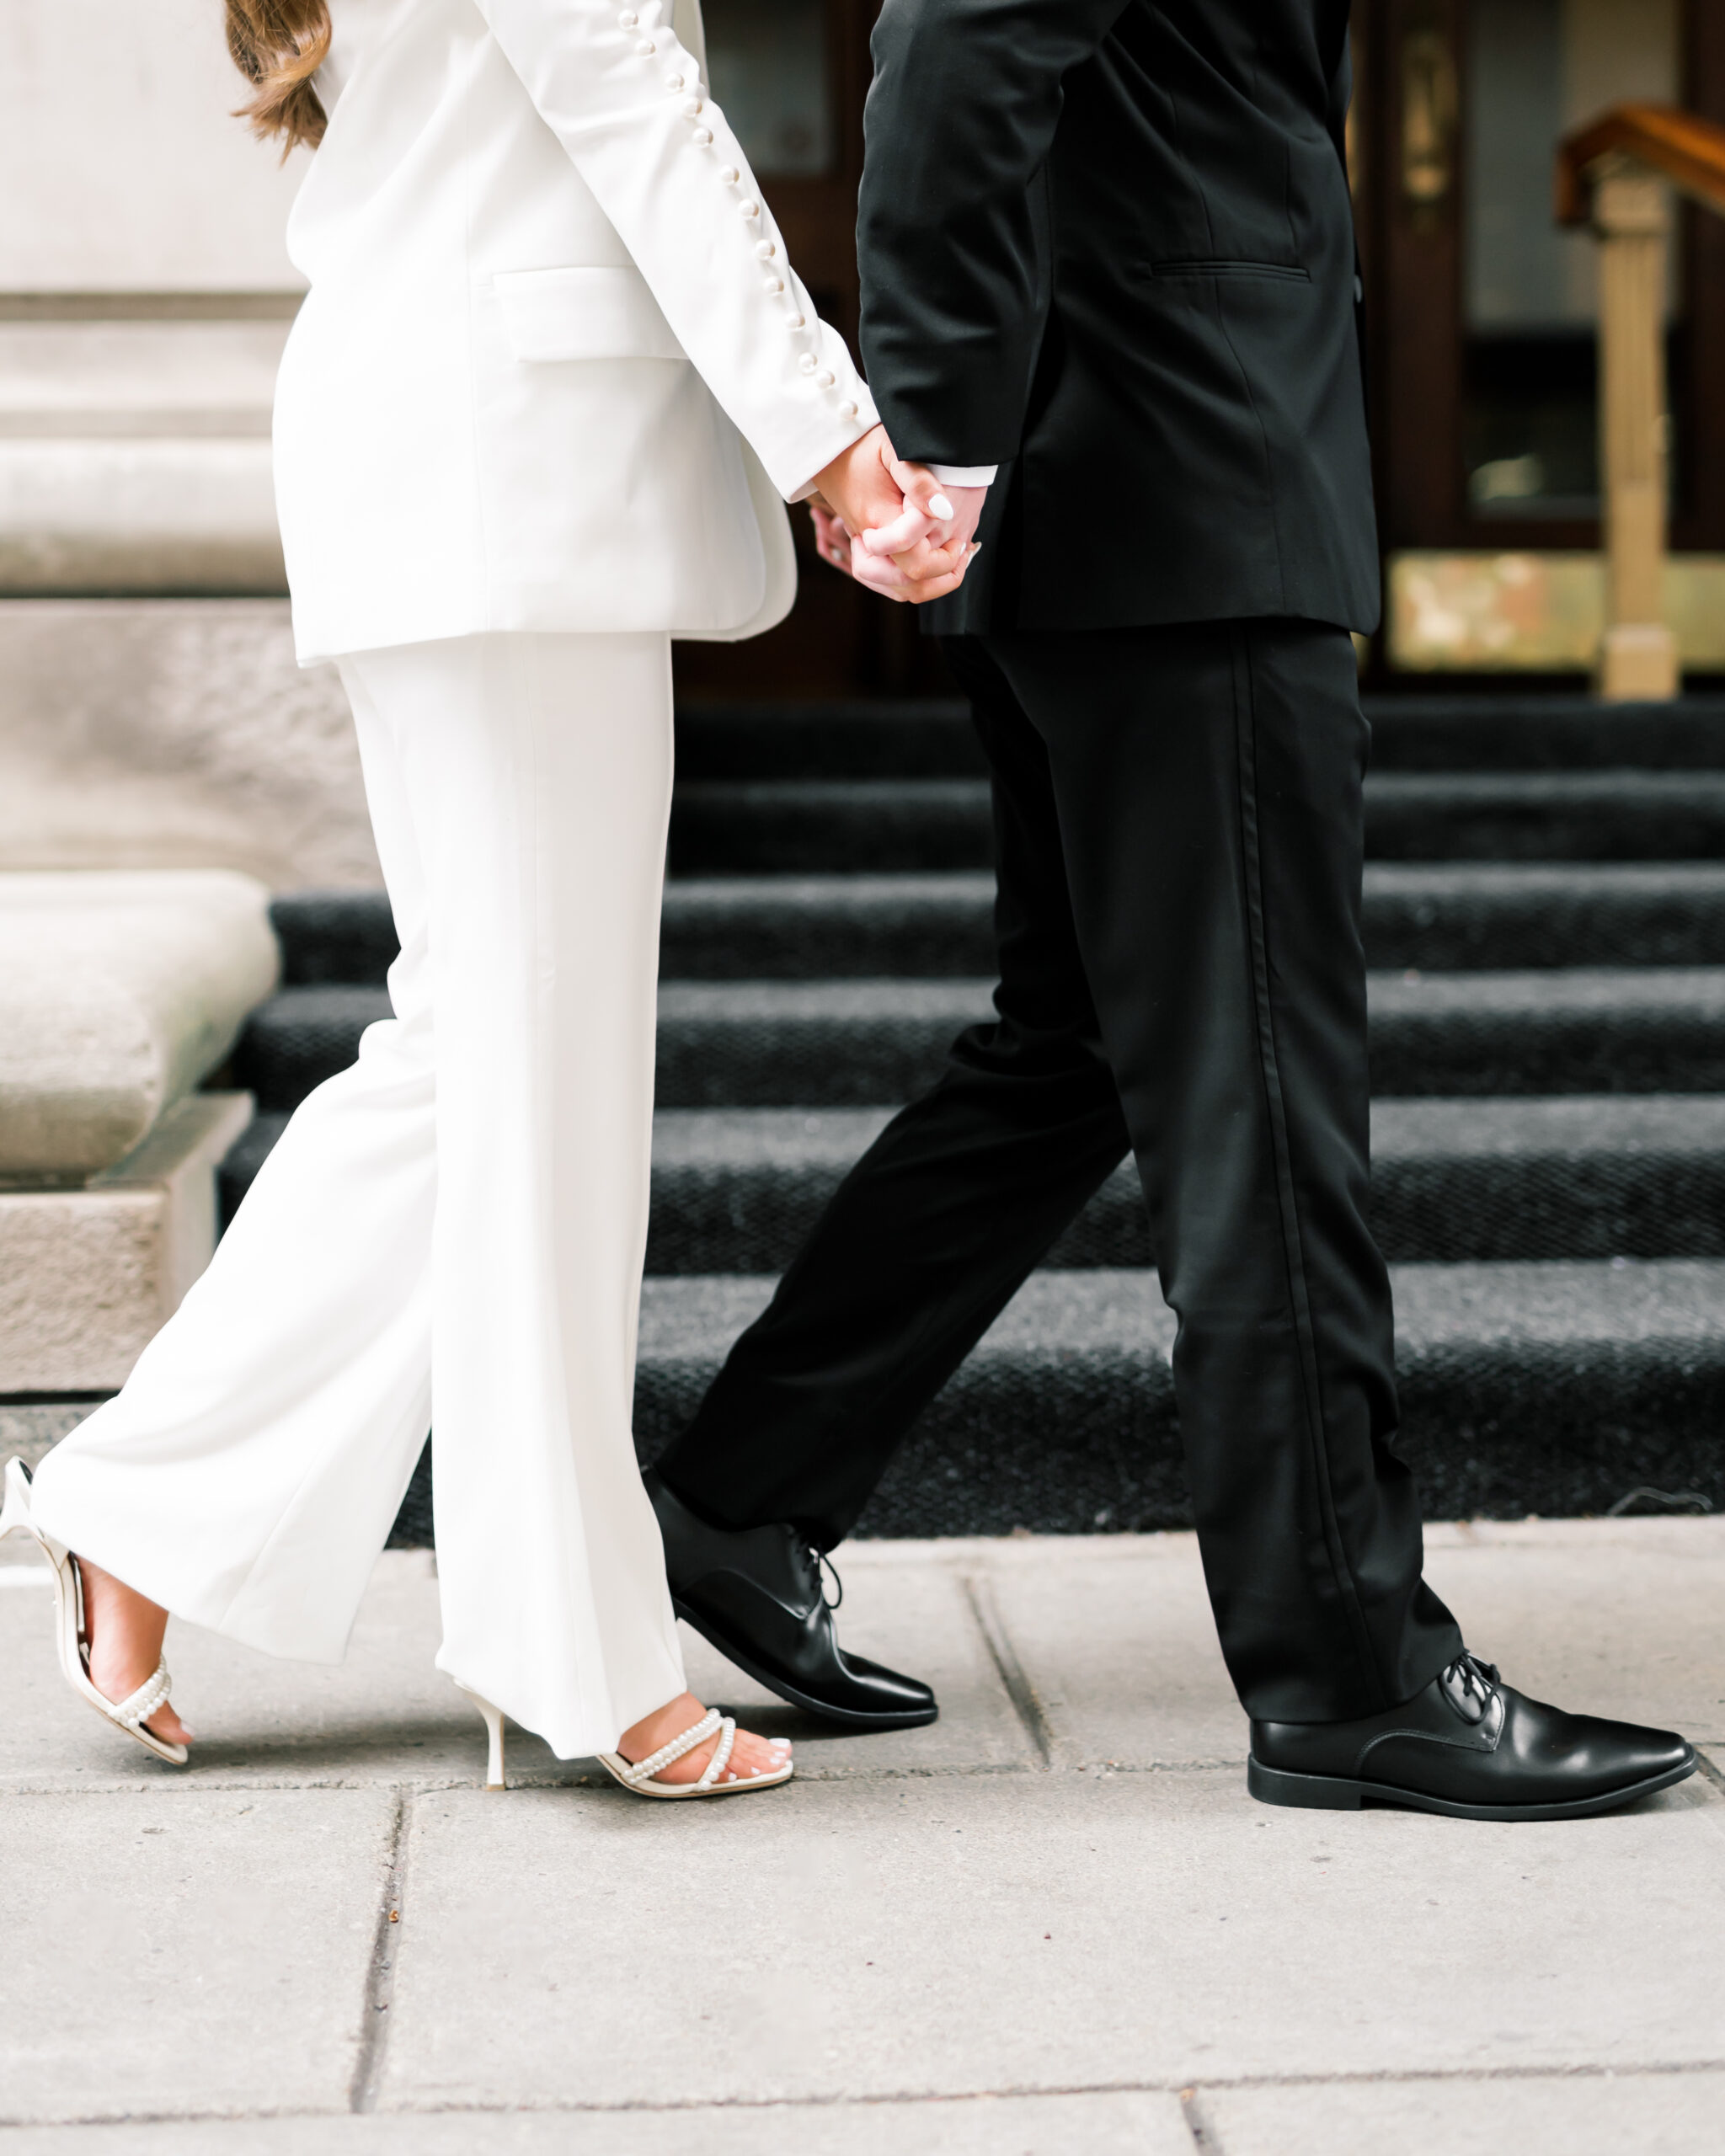 Woman wearing white walking with man wearing black suit